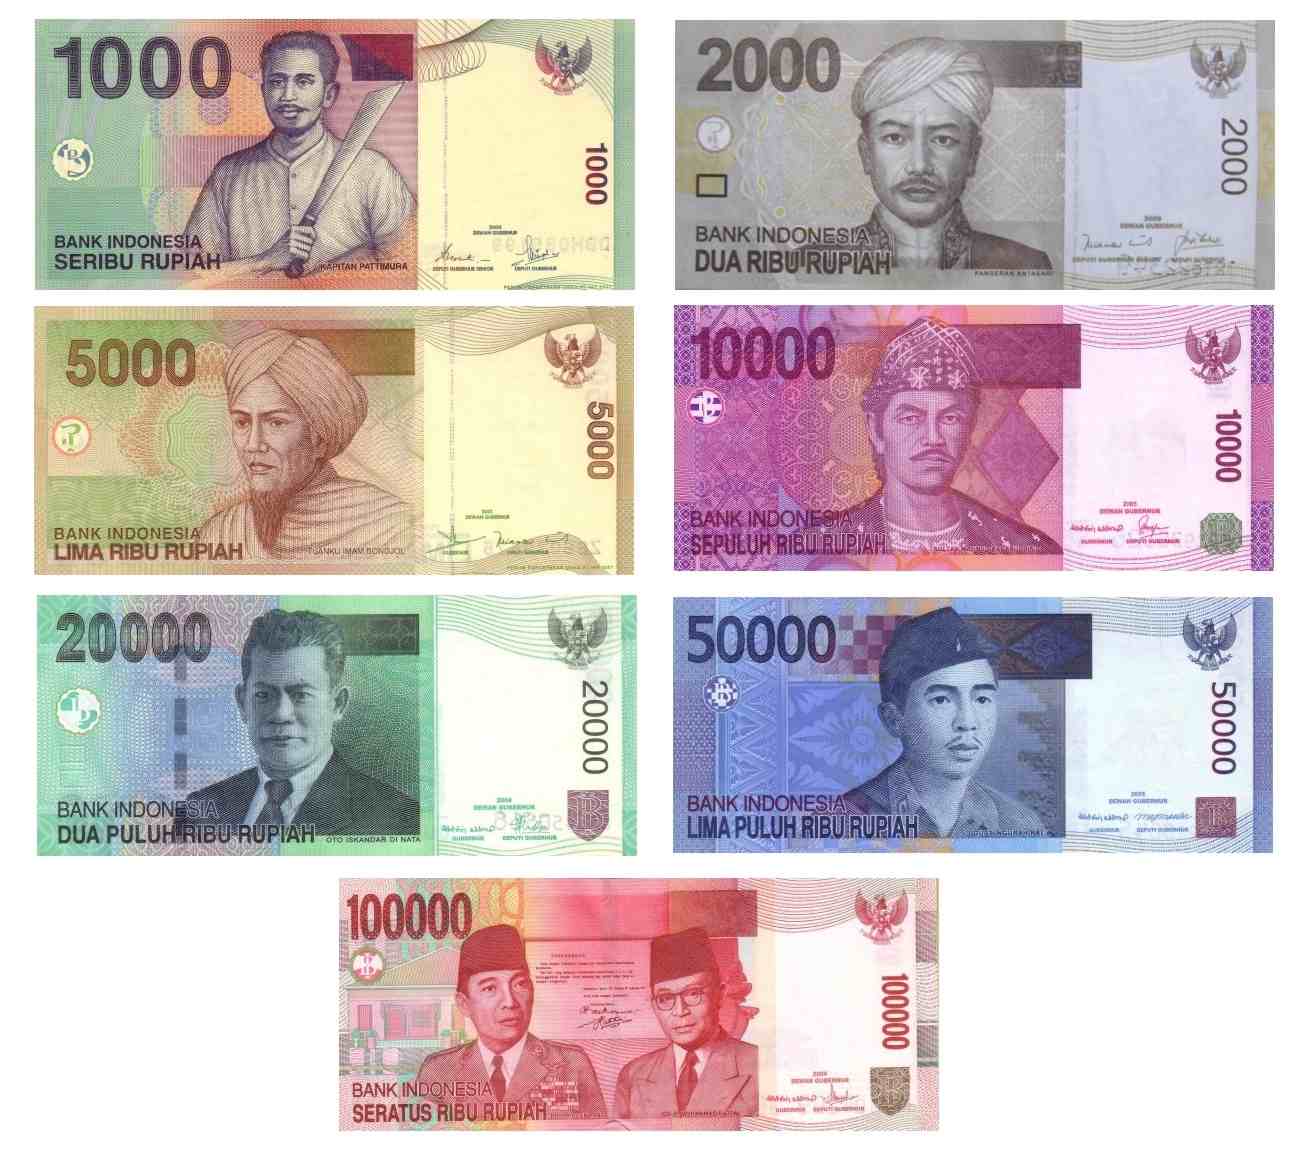 Indonezja wprowadzi do obiegu nową serię banknotów pod koniec 2016 roku